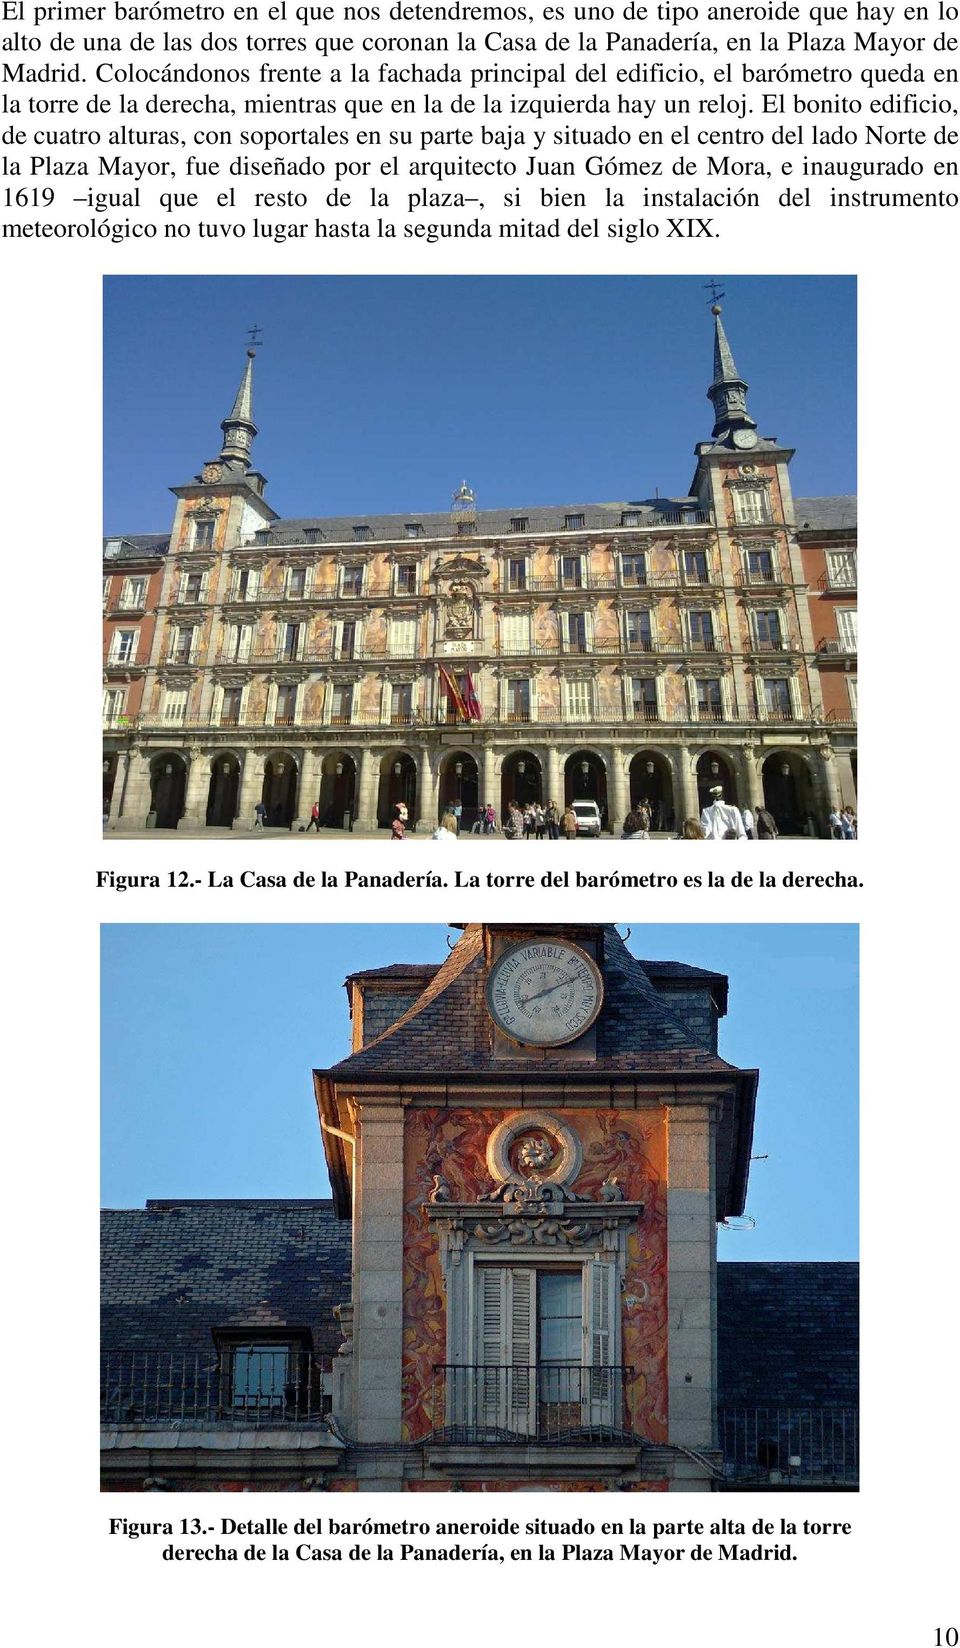 El bonito edificio, de cuatro alturas, con soportales en su parte baja y situado en el centro del lado Norte de la Plaza Mayor, fue diseñado por el arquitecto Juan Gómez de Mora, e inaugurado en 1619